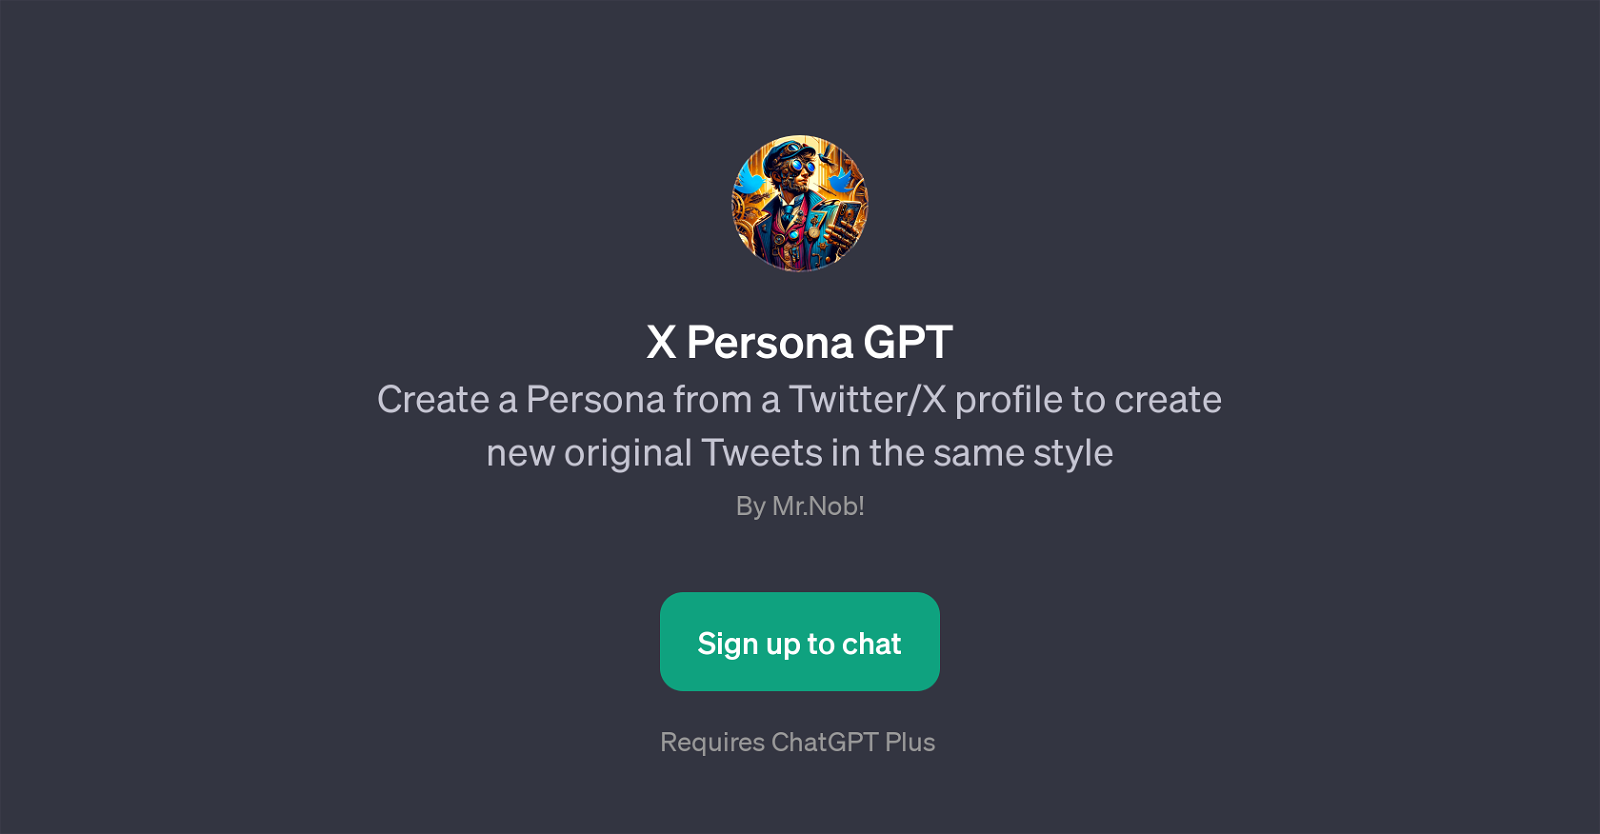 X Persona GPT website